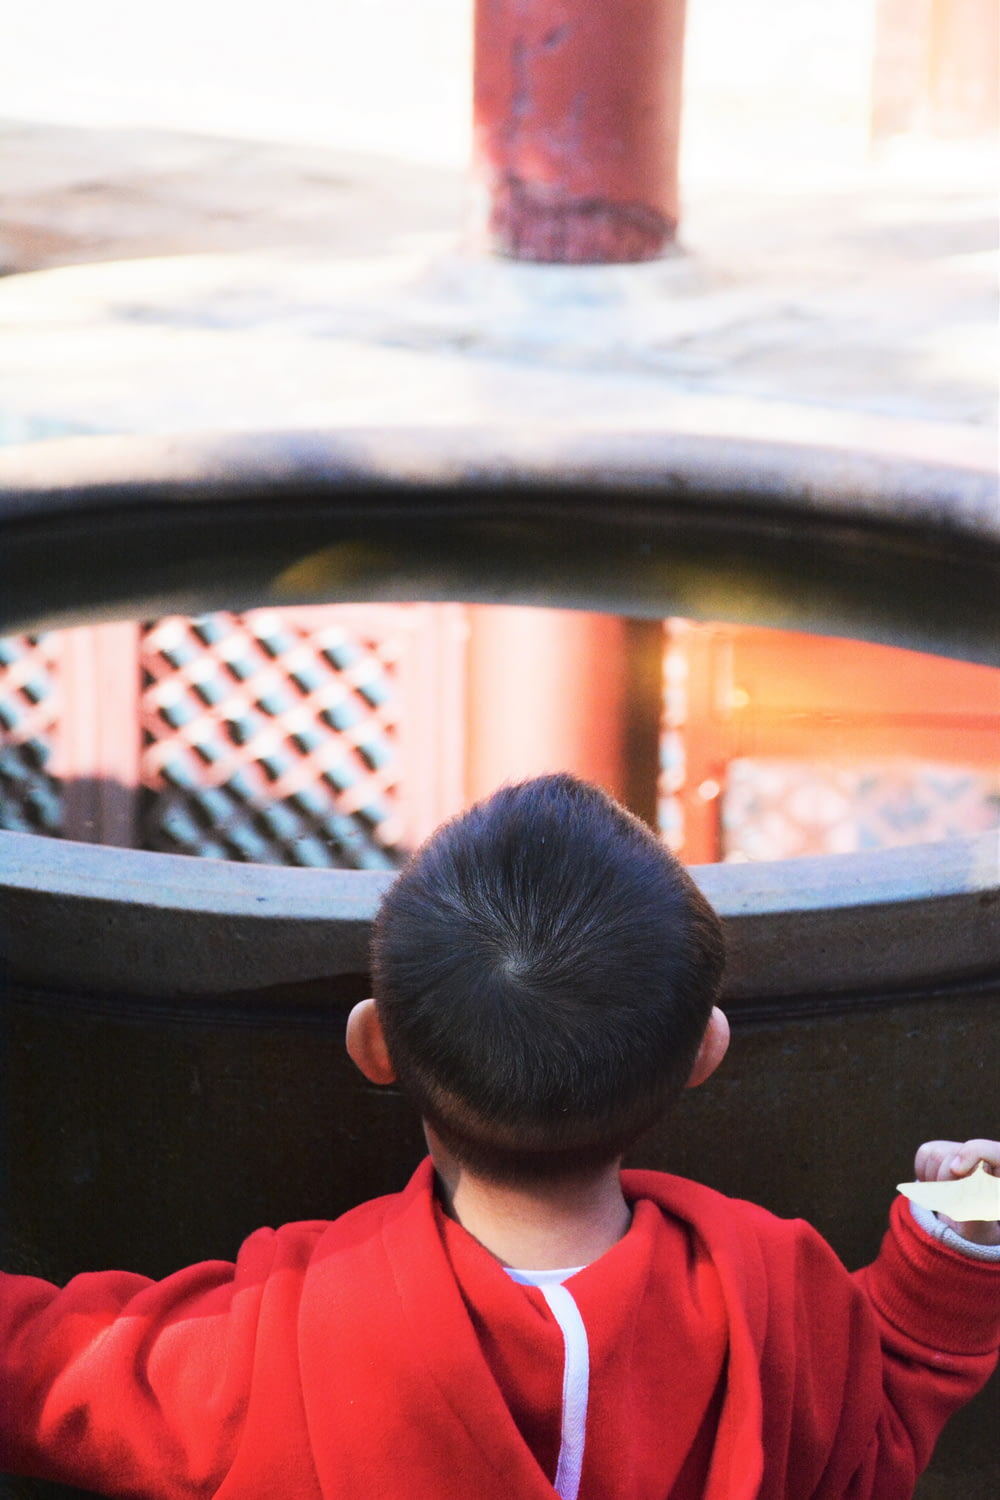 Ein kleiner Junge in einer roten Jacke, der eine weiße Frisbee hält